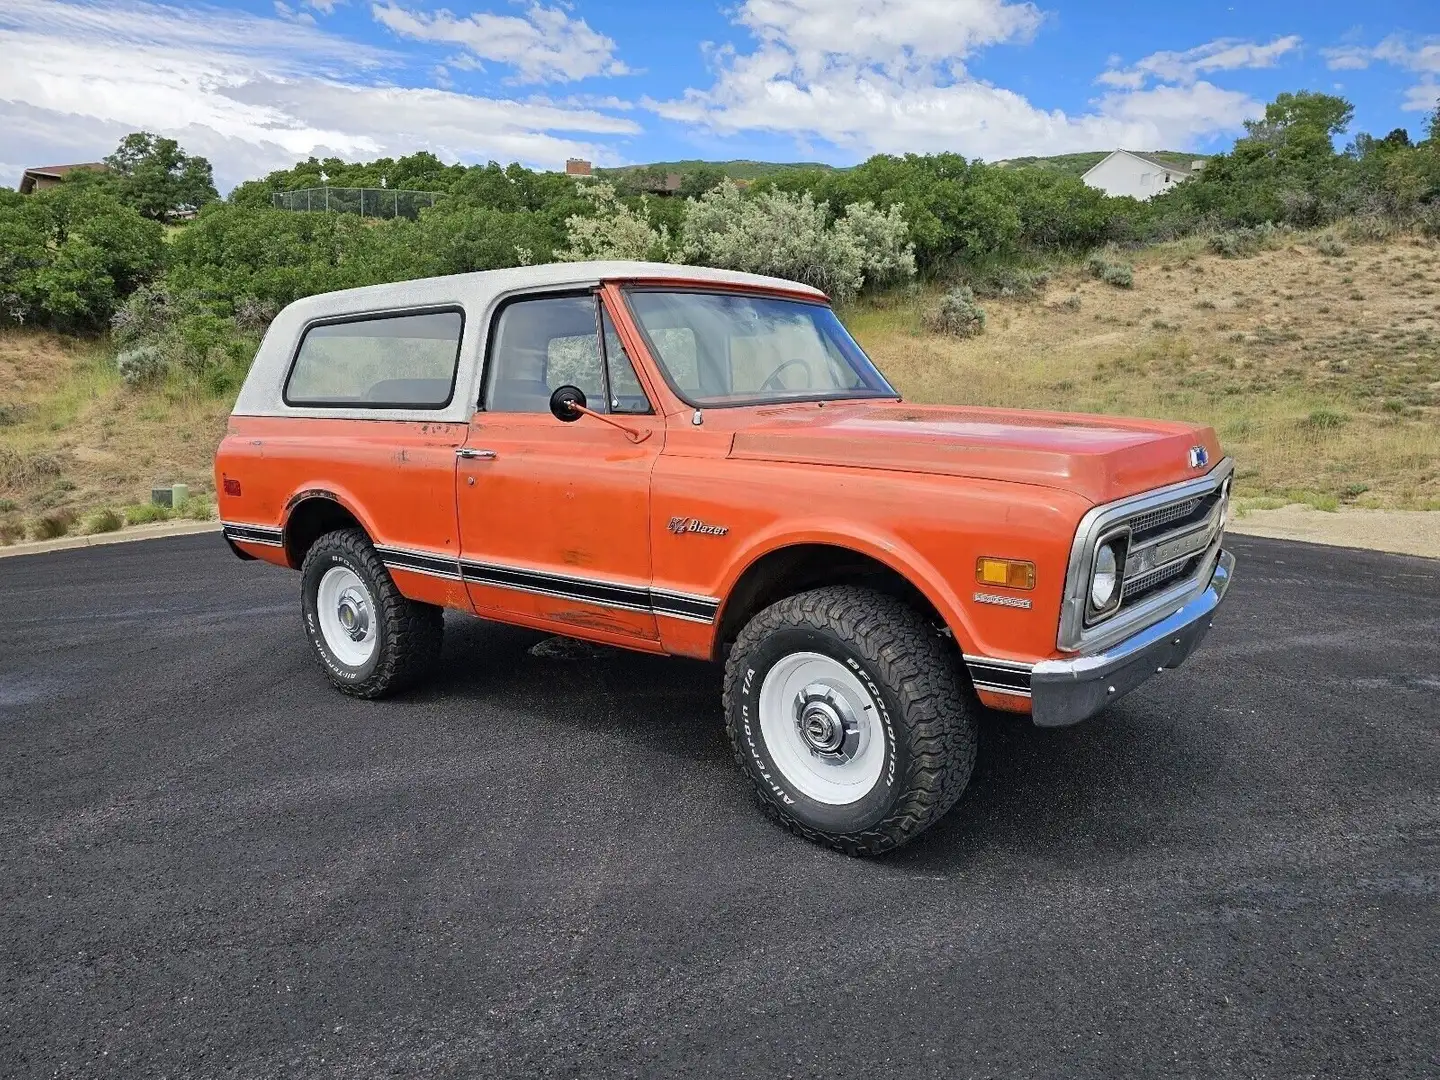 Chevrolet Blazer Orange - 1